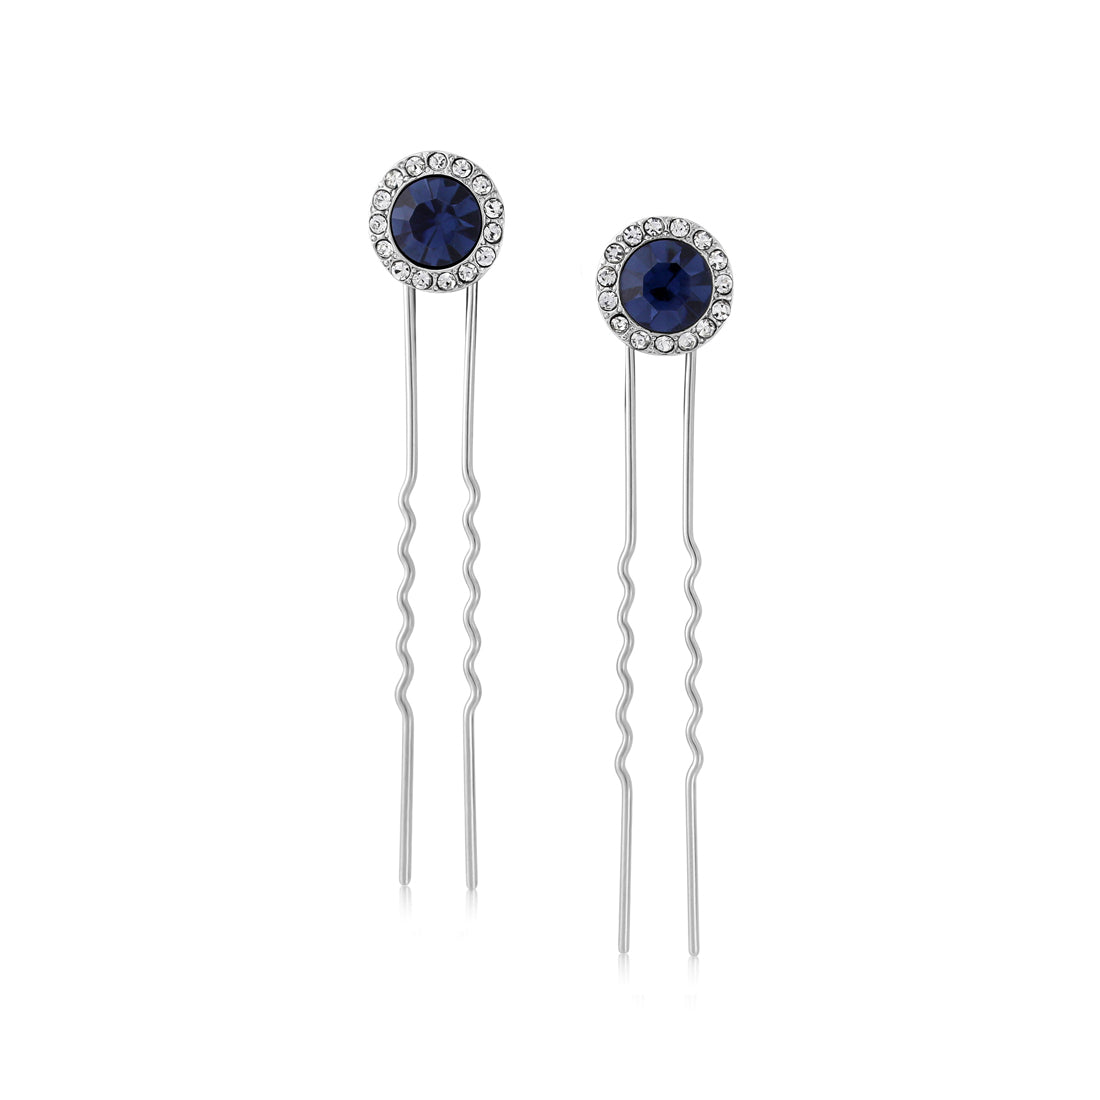 Moonlight Shimmer Navy Blue Crystal Hair Pins